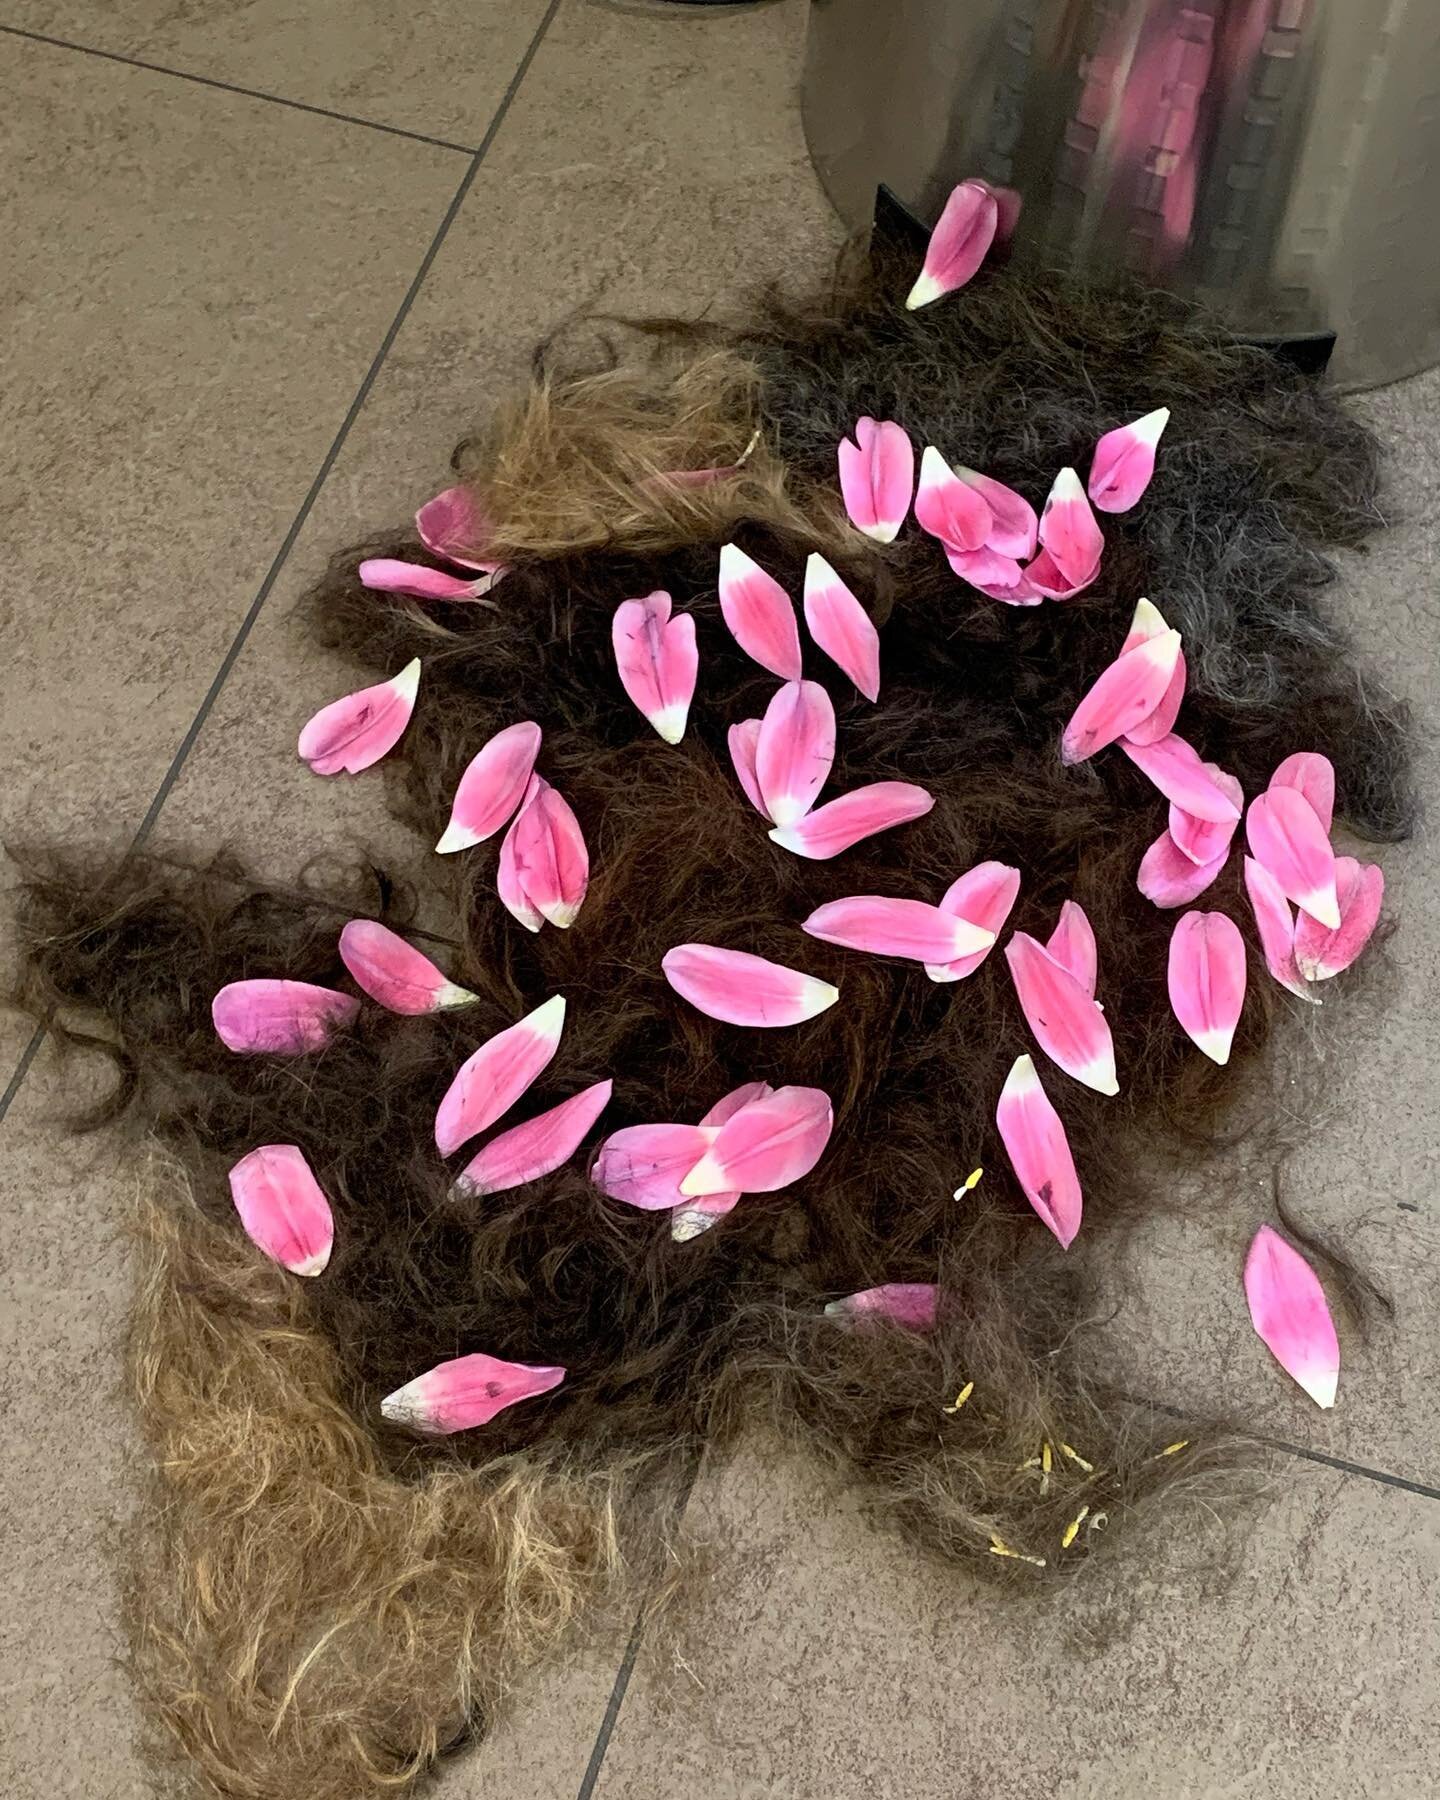 Tulip petals on a bed of hair #ontheendofagreathairday #becreative #hair #tulips #leafs #flowerpower #somuchhair #everywhere #koep #amsterdam #evo #evohair #hazenstraat #kapper